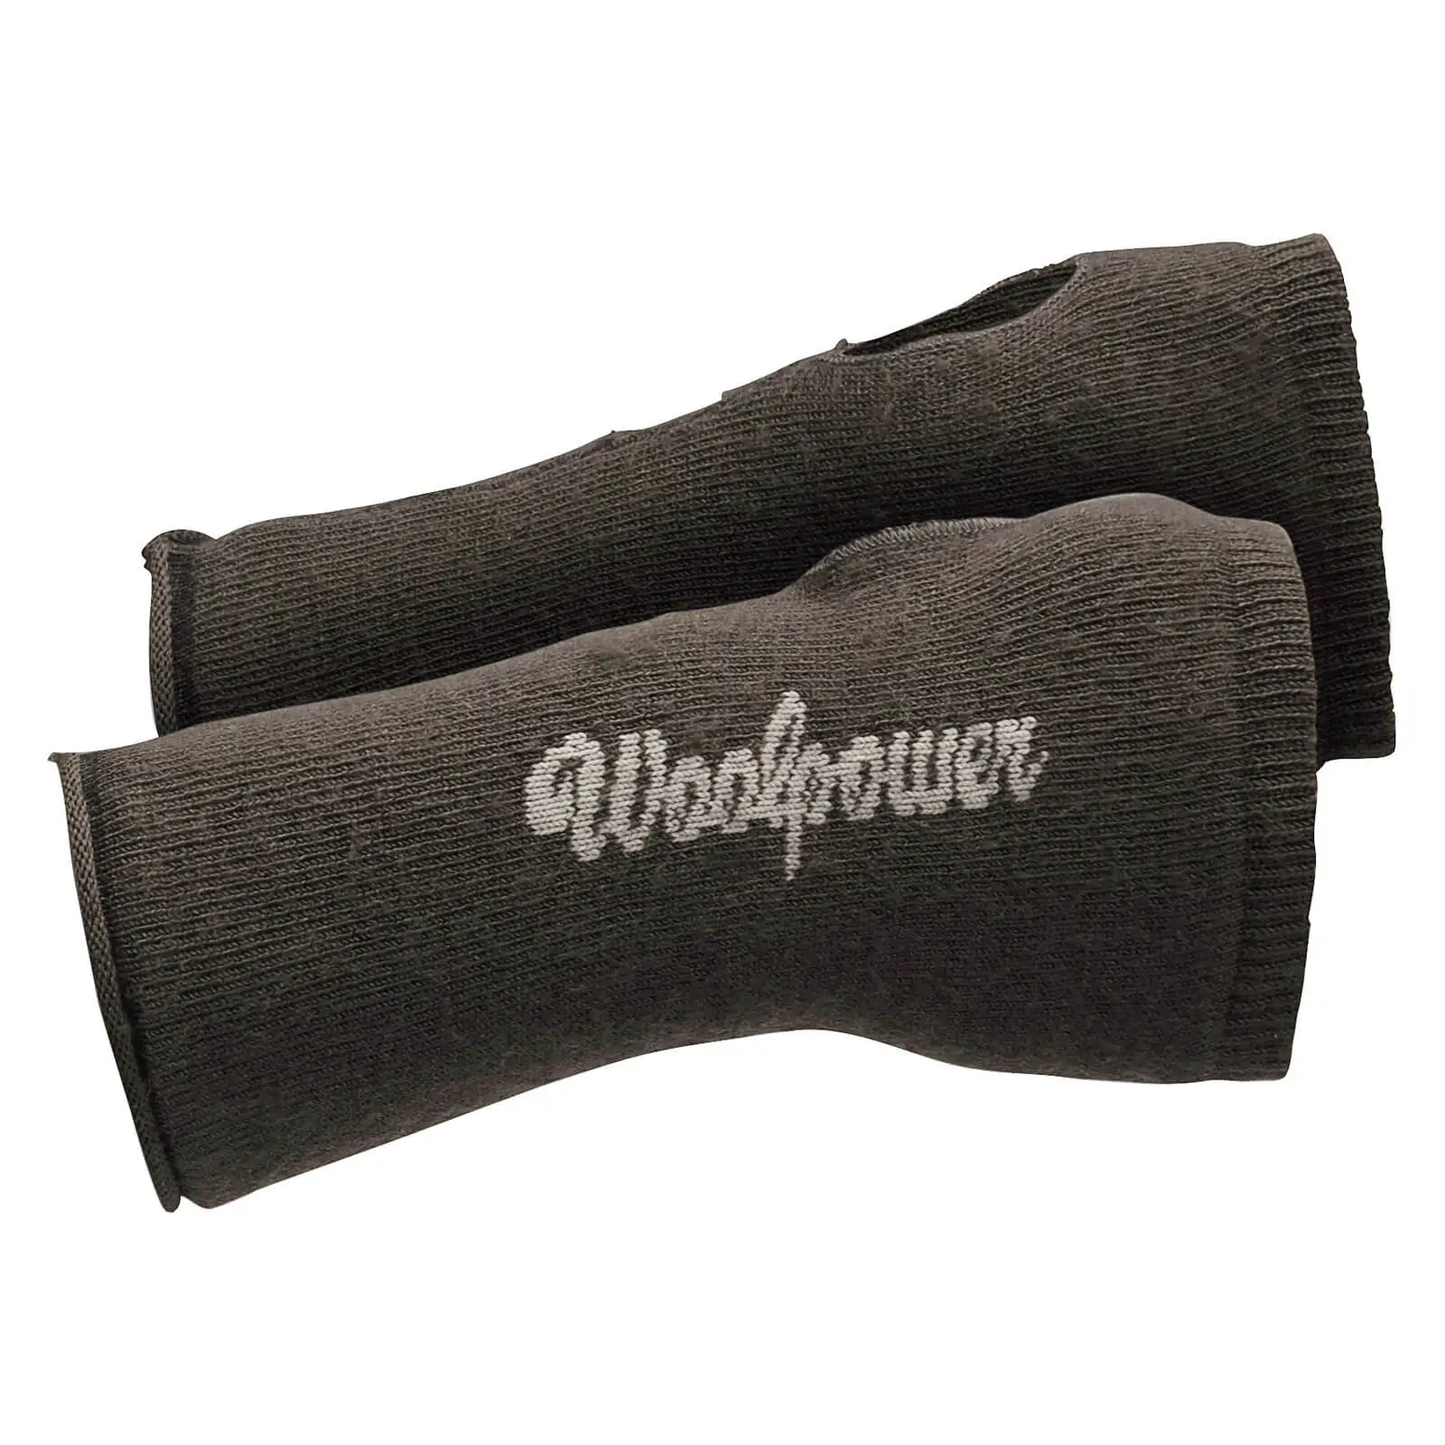 WOOLPOWER - WRIST GAITER  - 200 g/m2